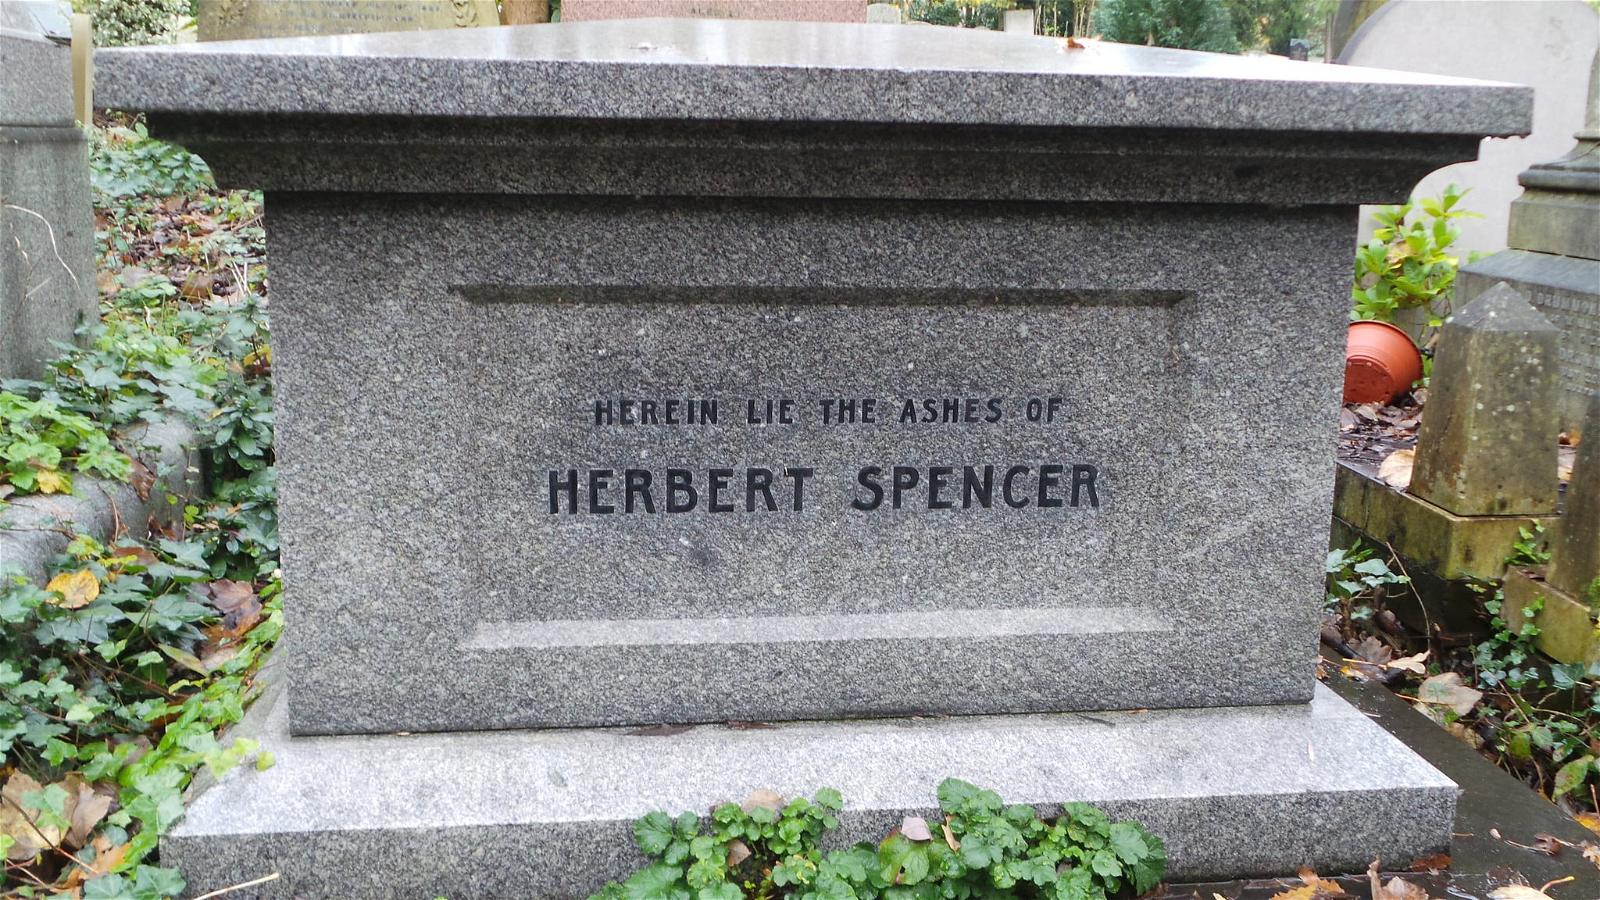 Imagen de Herbert Spencer. highgate london cemetery herbertspencer